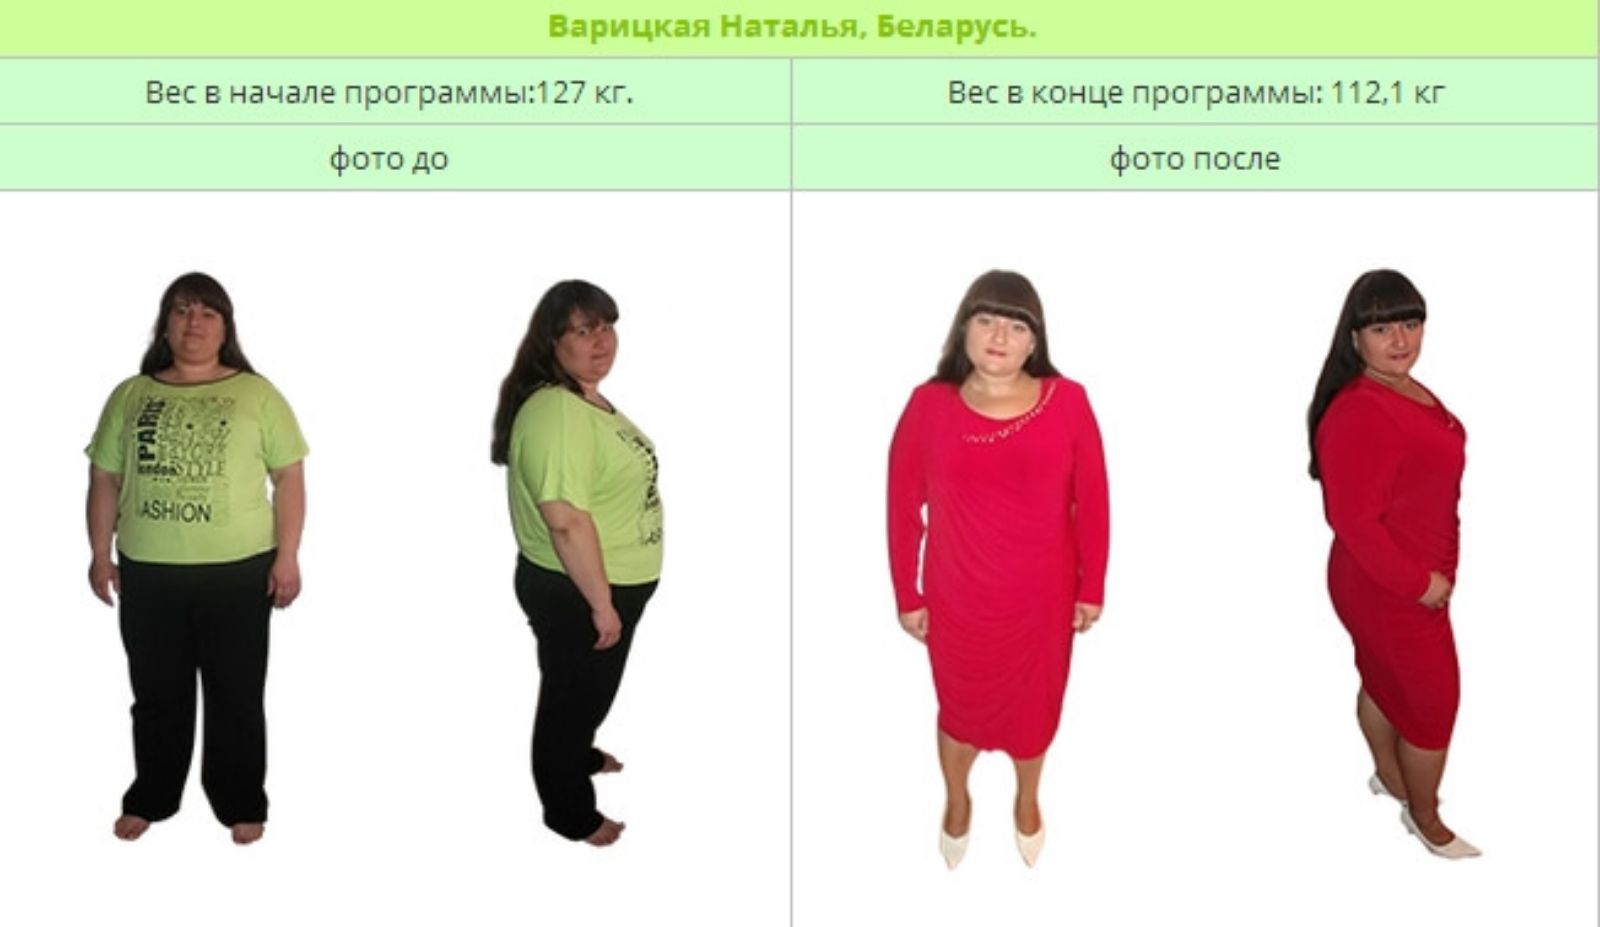 Онлайн Программа Снижения Веса